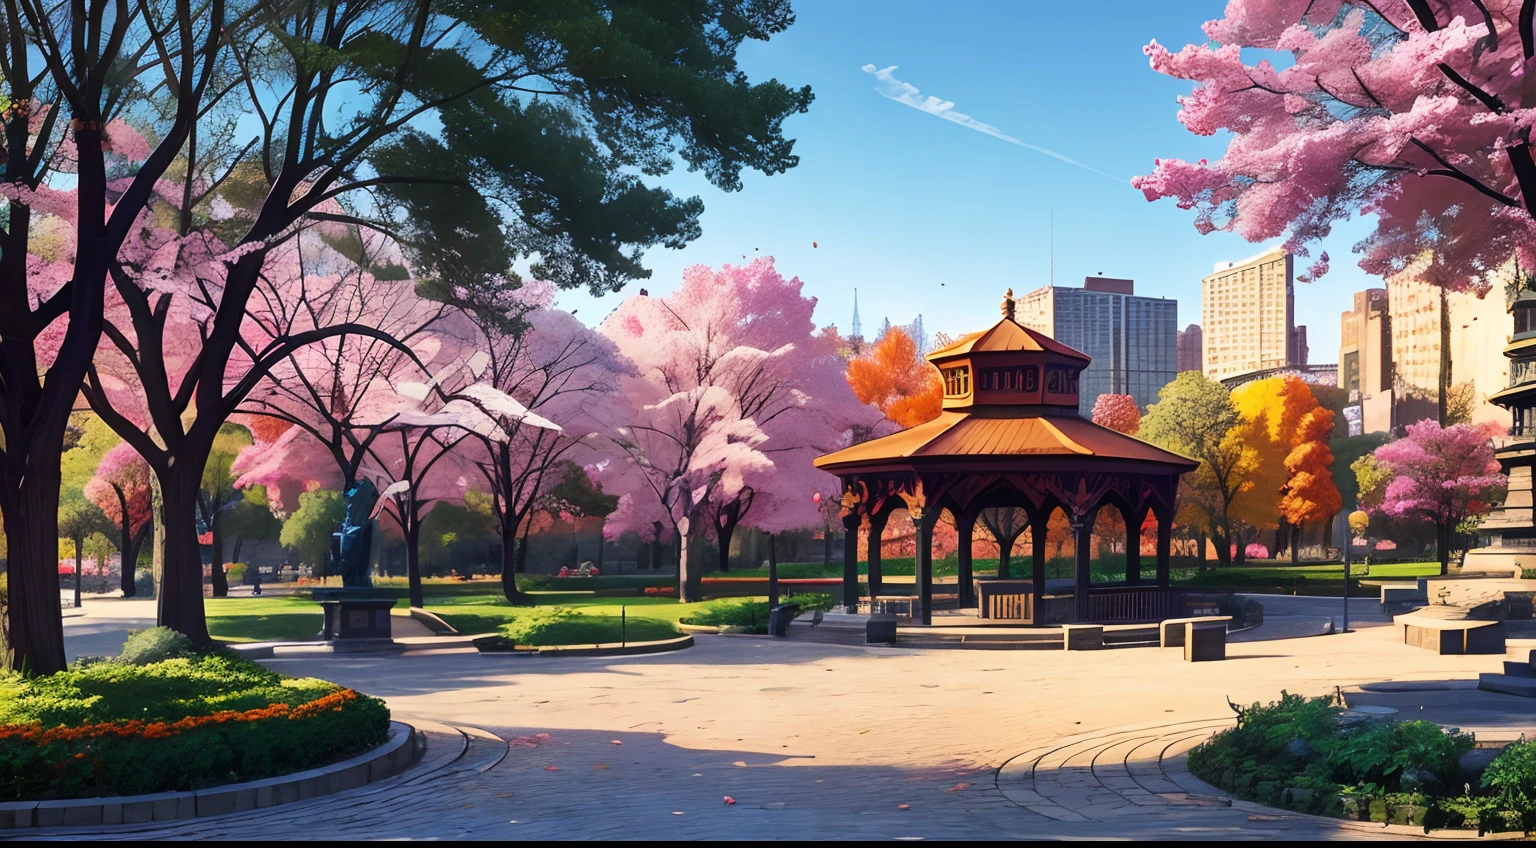 (mejor calidad:1.0), a vibrant park in the middle of a Brillante cityscape, árboles, bancos, 1 estatua, 1 cenador, Caminos adoquinados, estilo cómic, Brillante